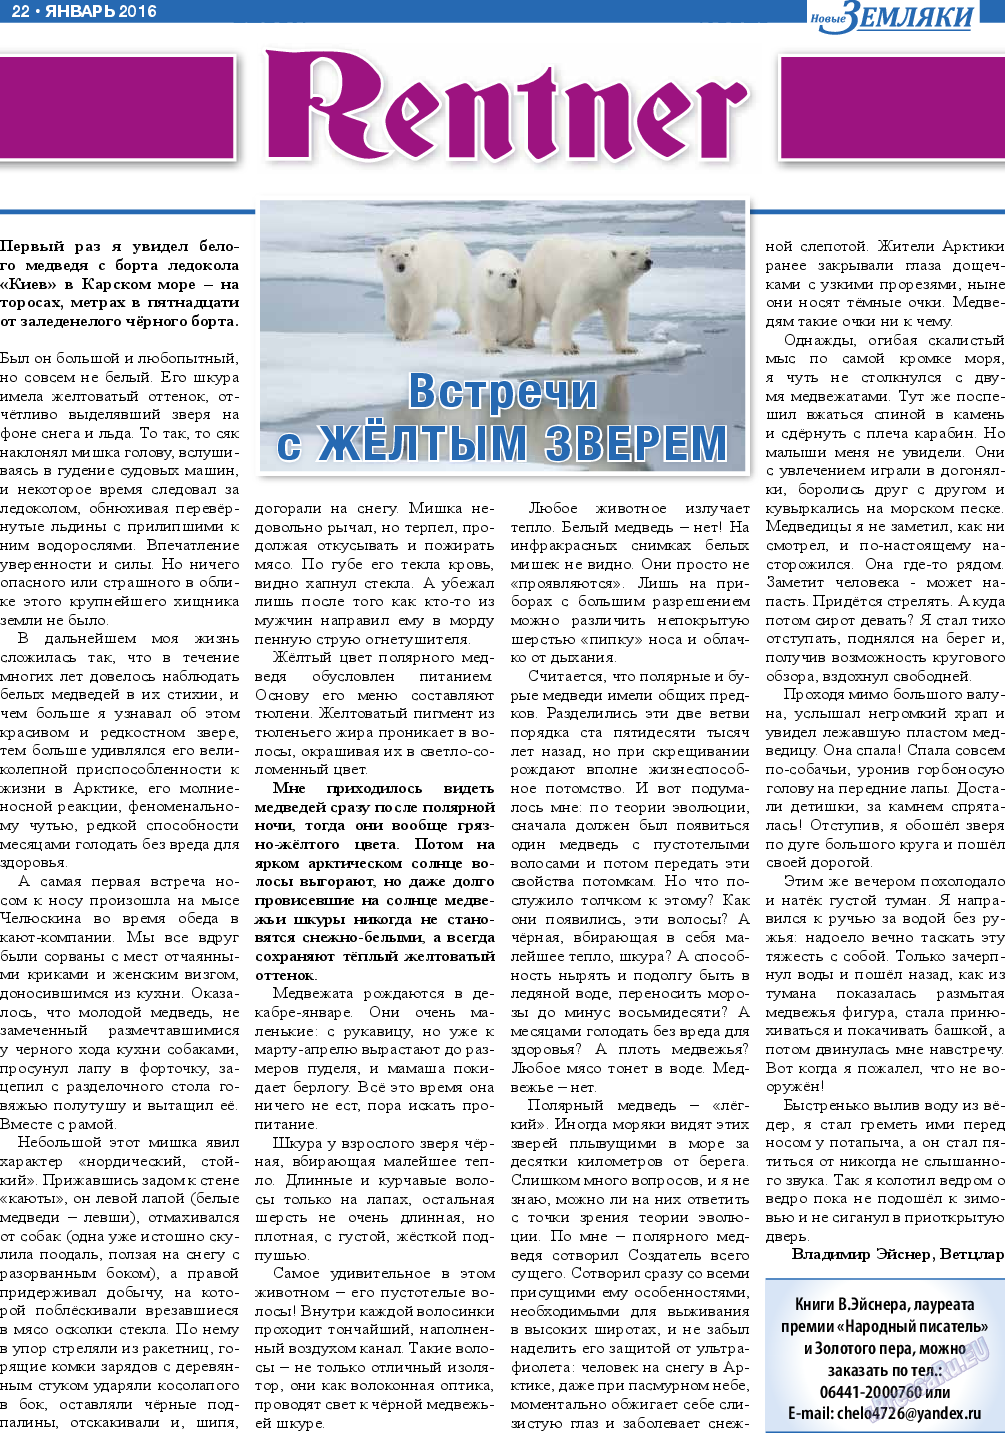 Новые Земляки (газета). 2016 год, номер 1, стр. 22